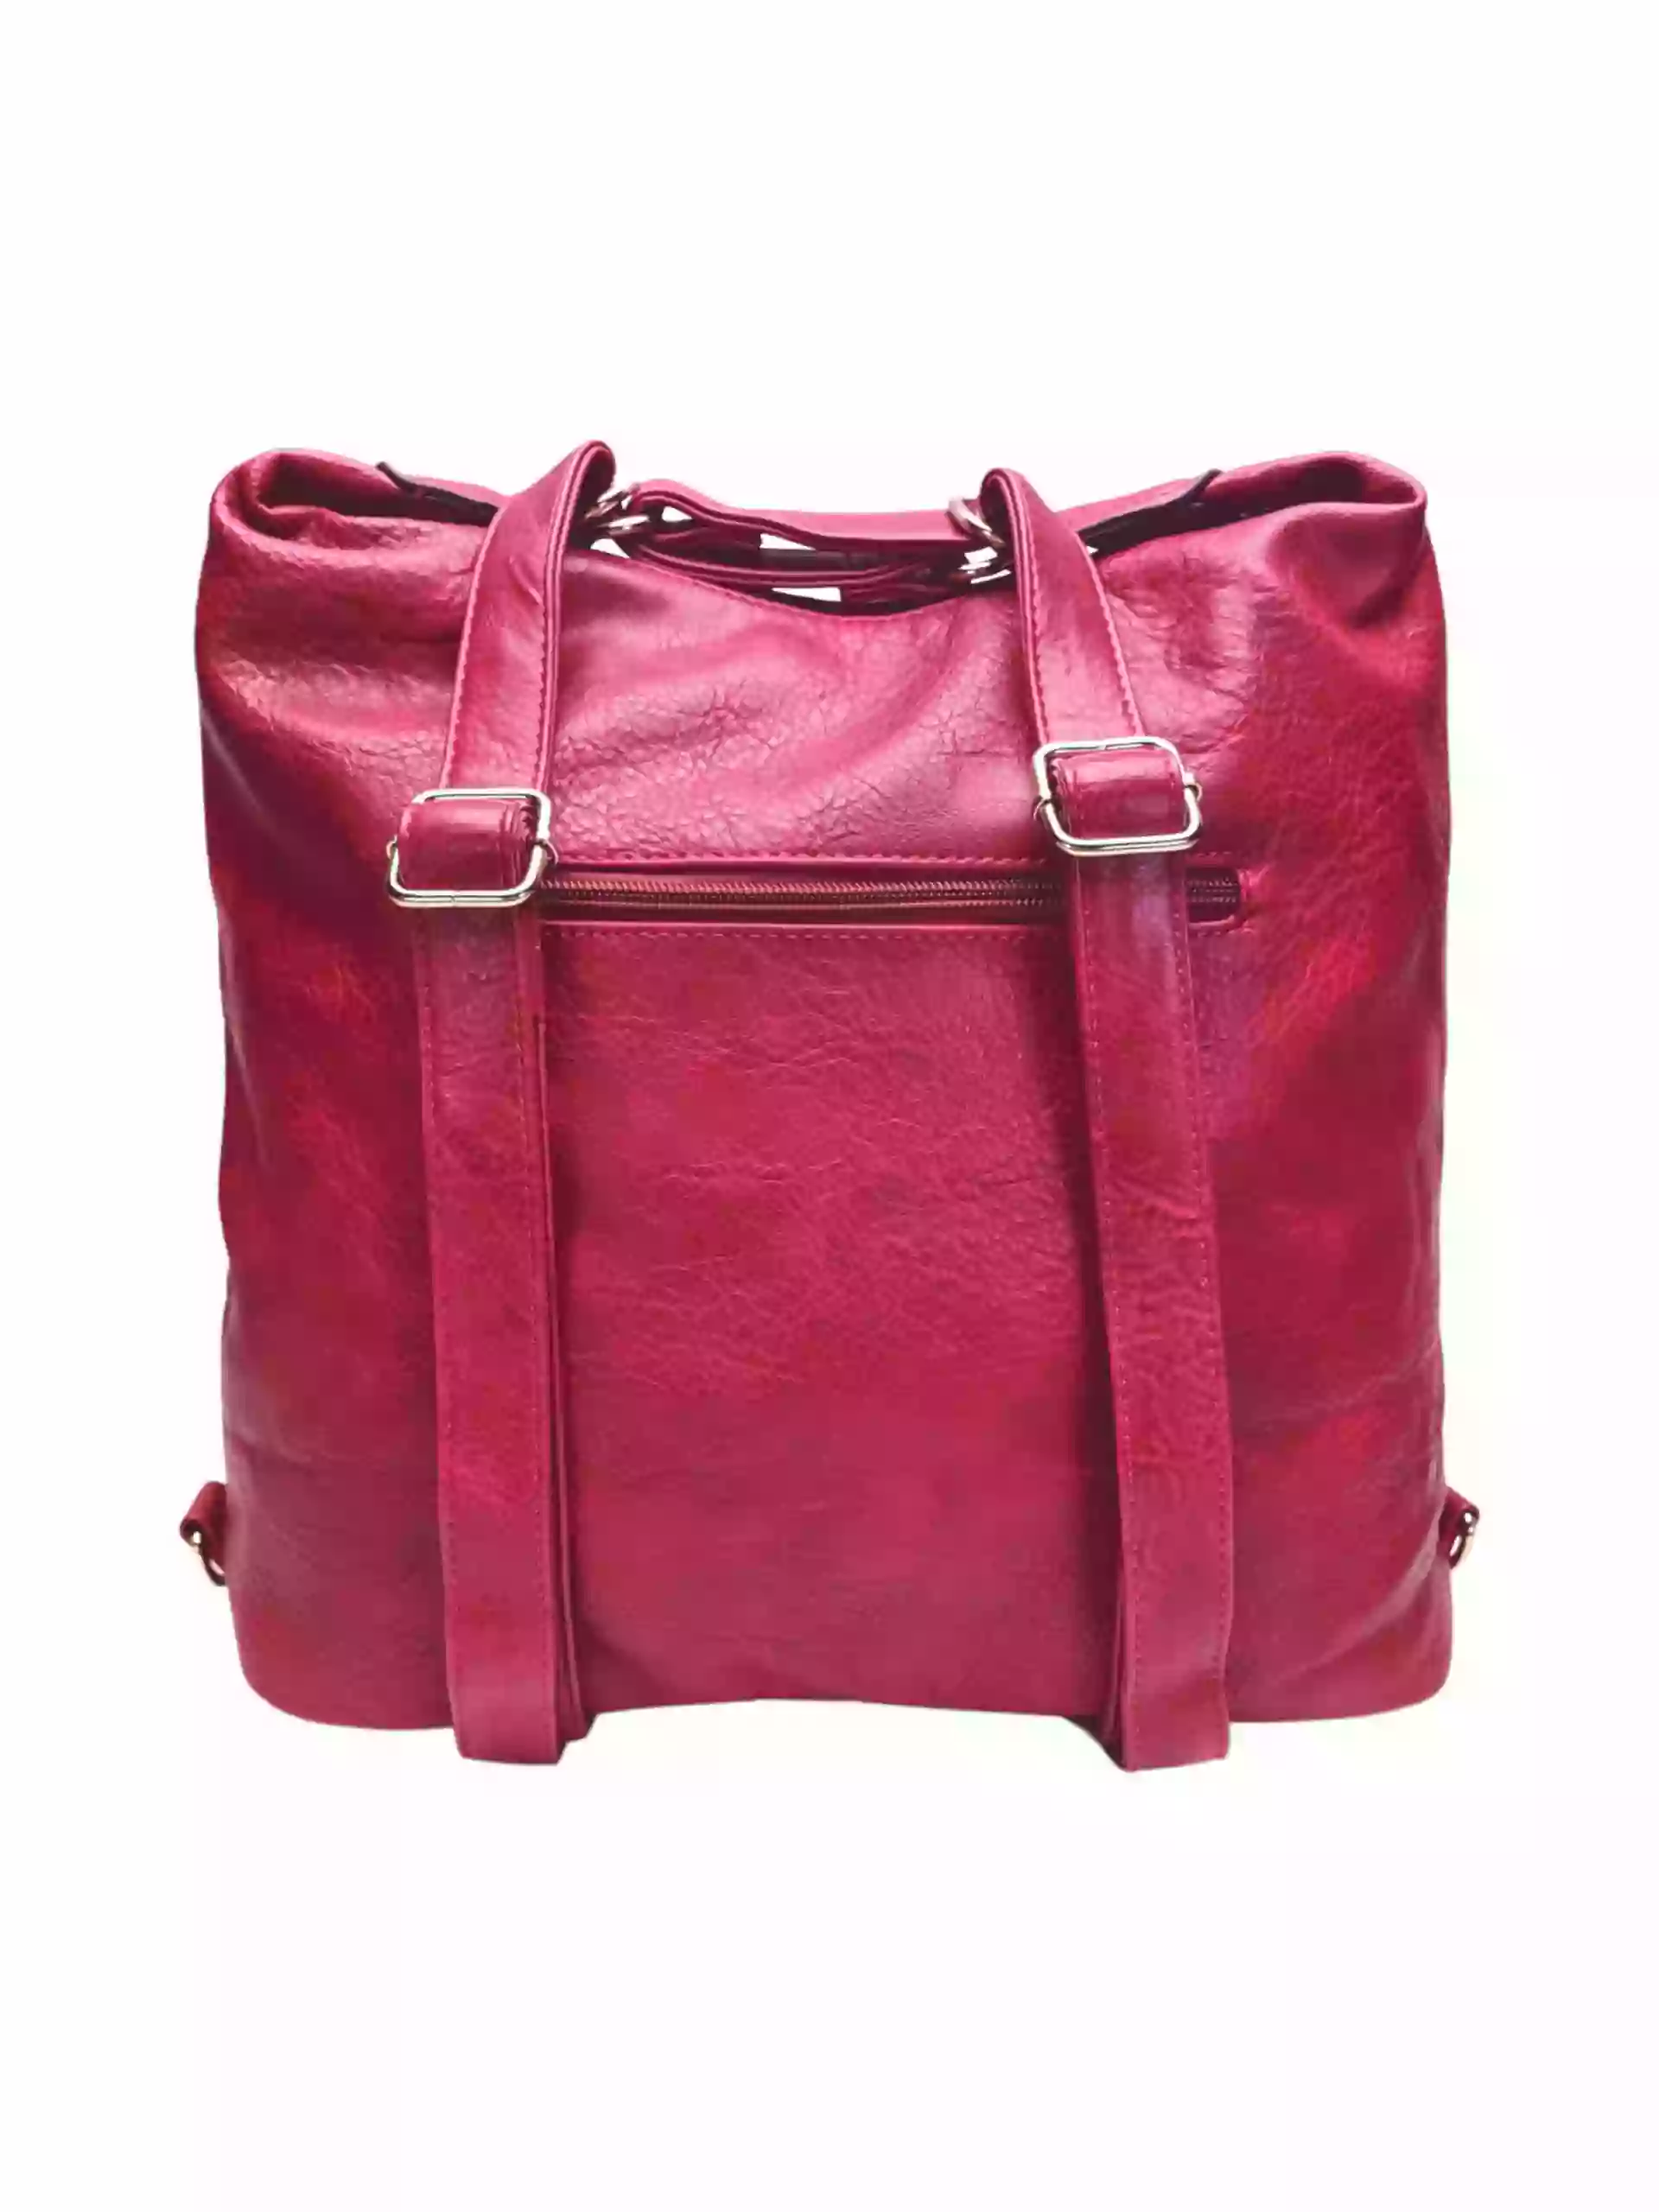 Moderní vínový / bordó kabelko-batoh z eko kůže, Tapple, H190010, zadní strana kabelko-batohu 2v1 s popruhy